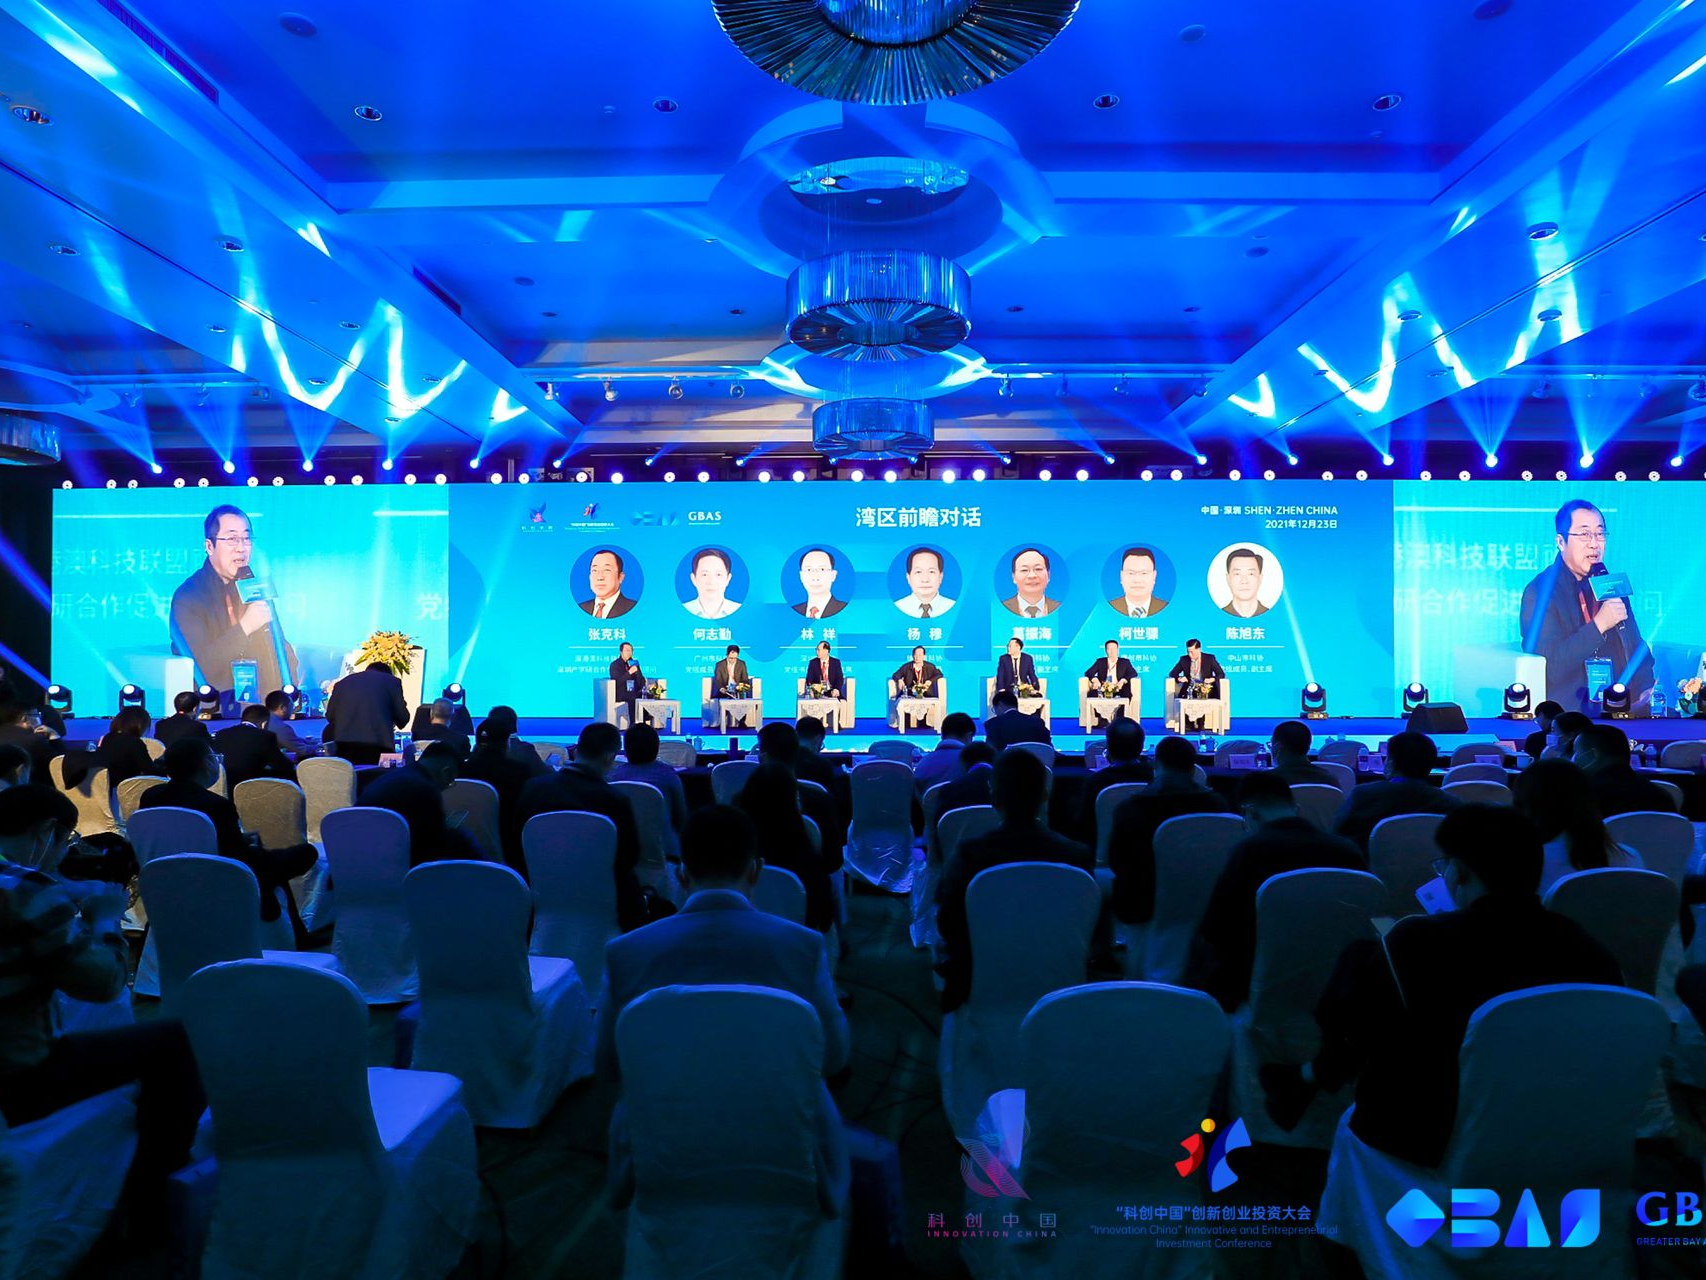 “科创中国”创新创业投资大会成果发布典礼暨大湾区科技大会举行